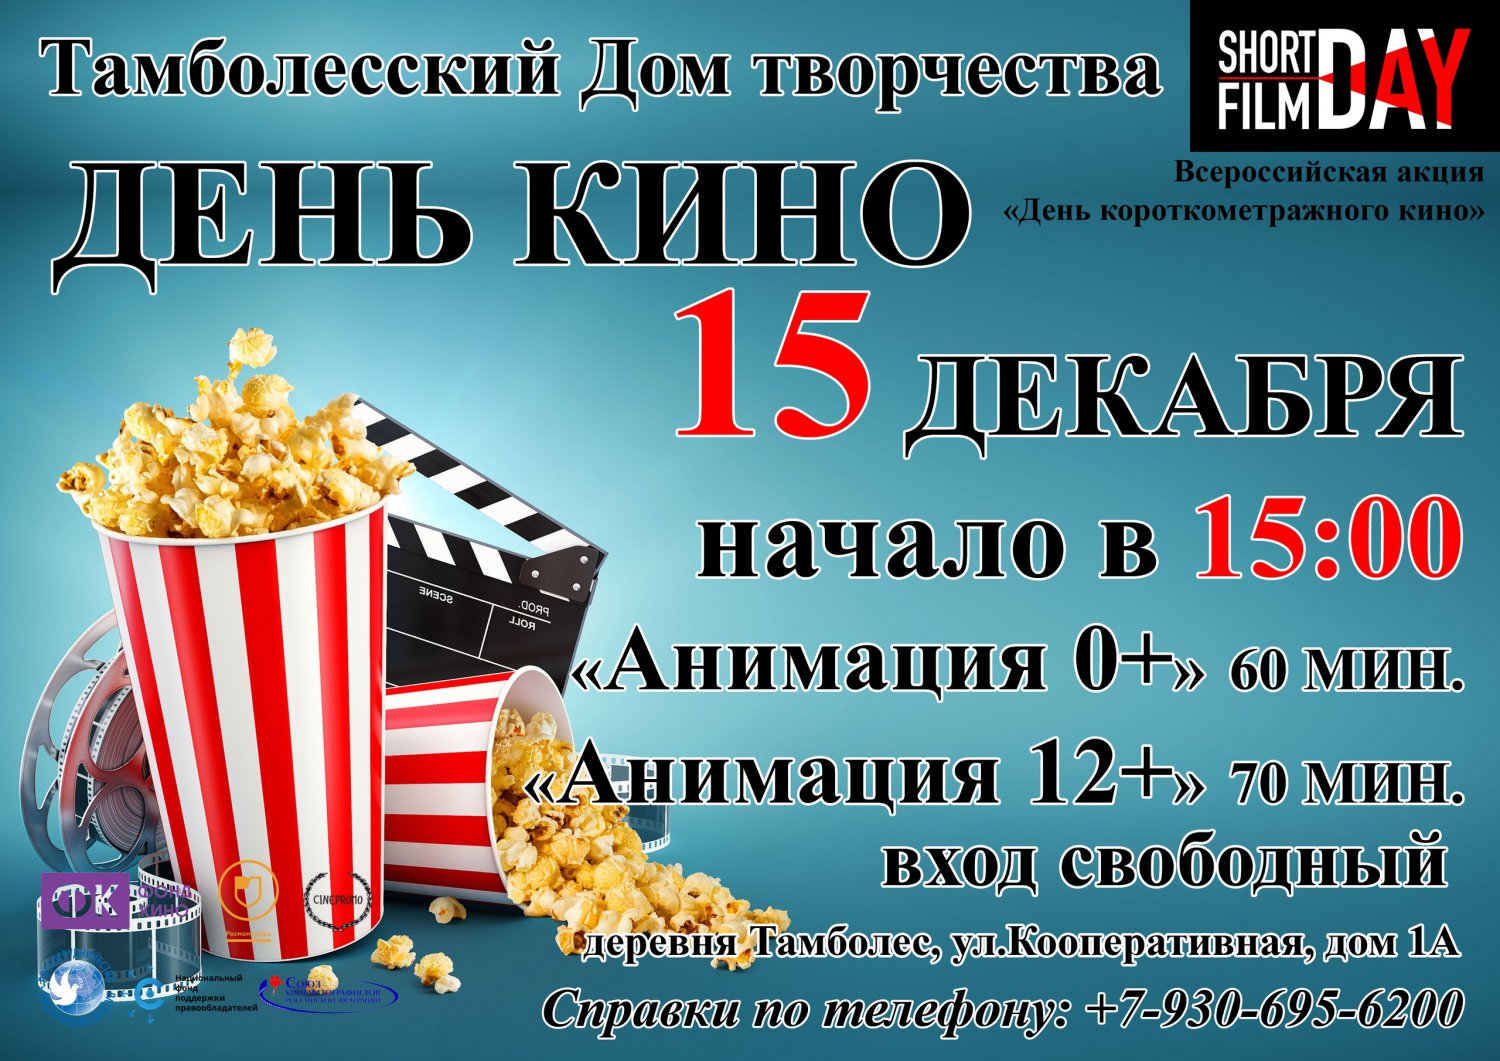 Фестиваль короткометражных фильмов